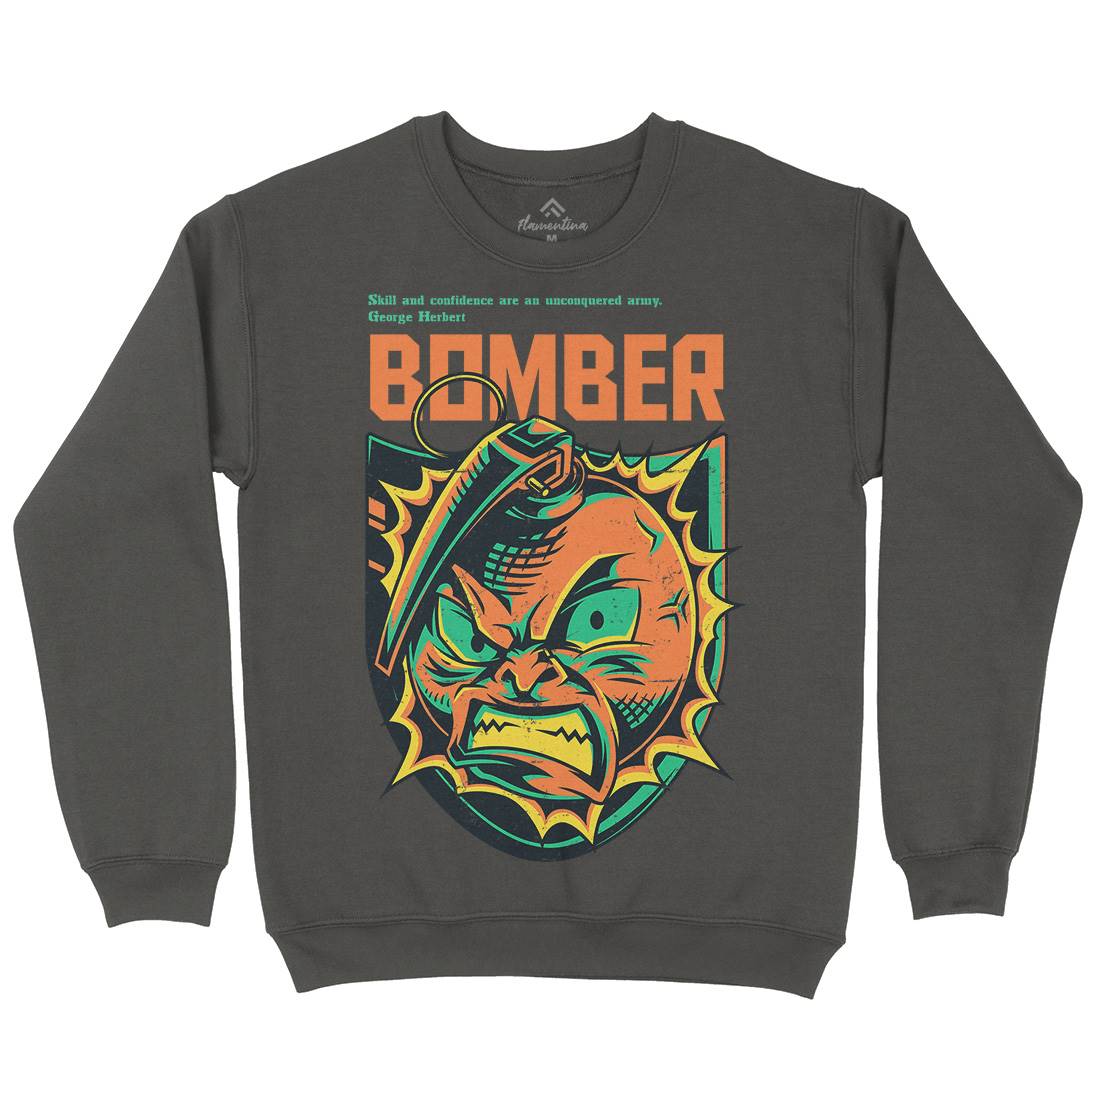 Bomber Grenade Kids Crew Neck Sweatshirt Army D846